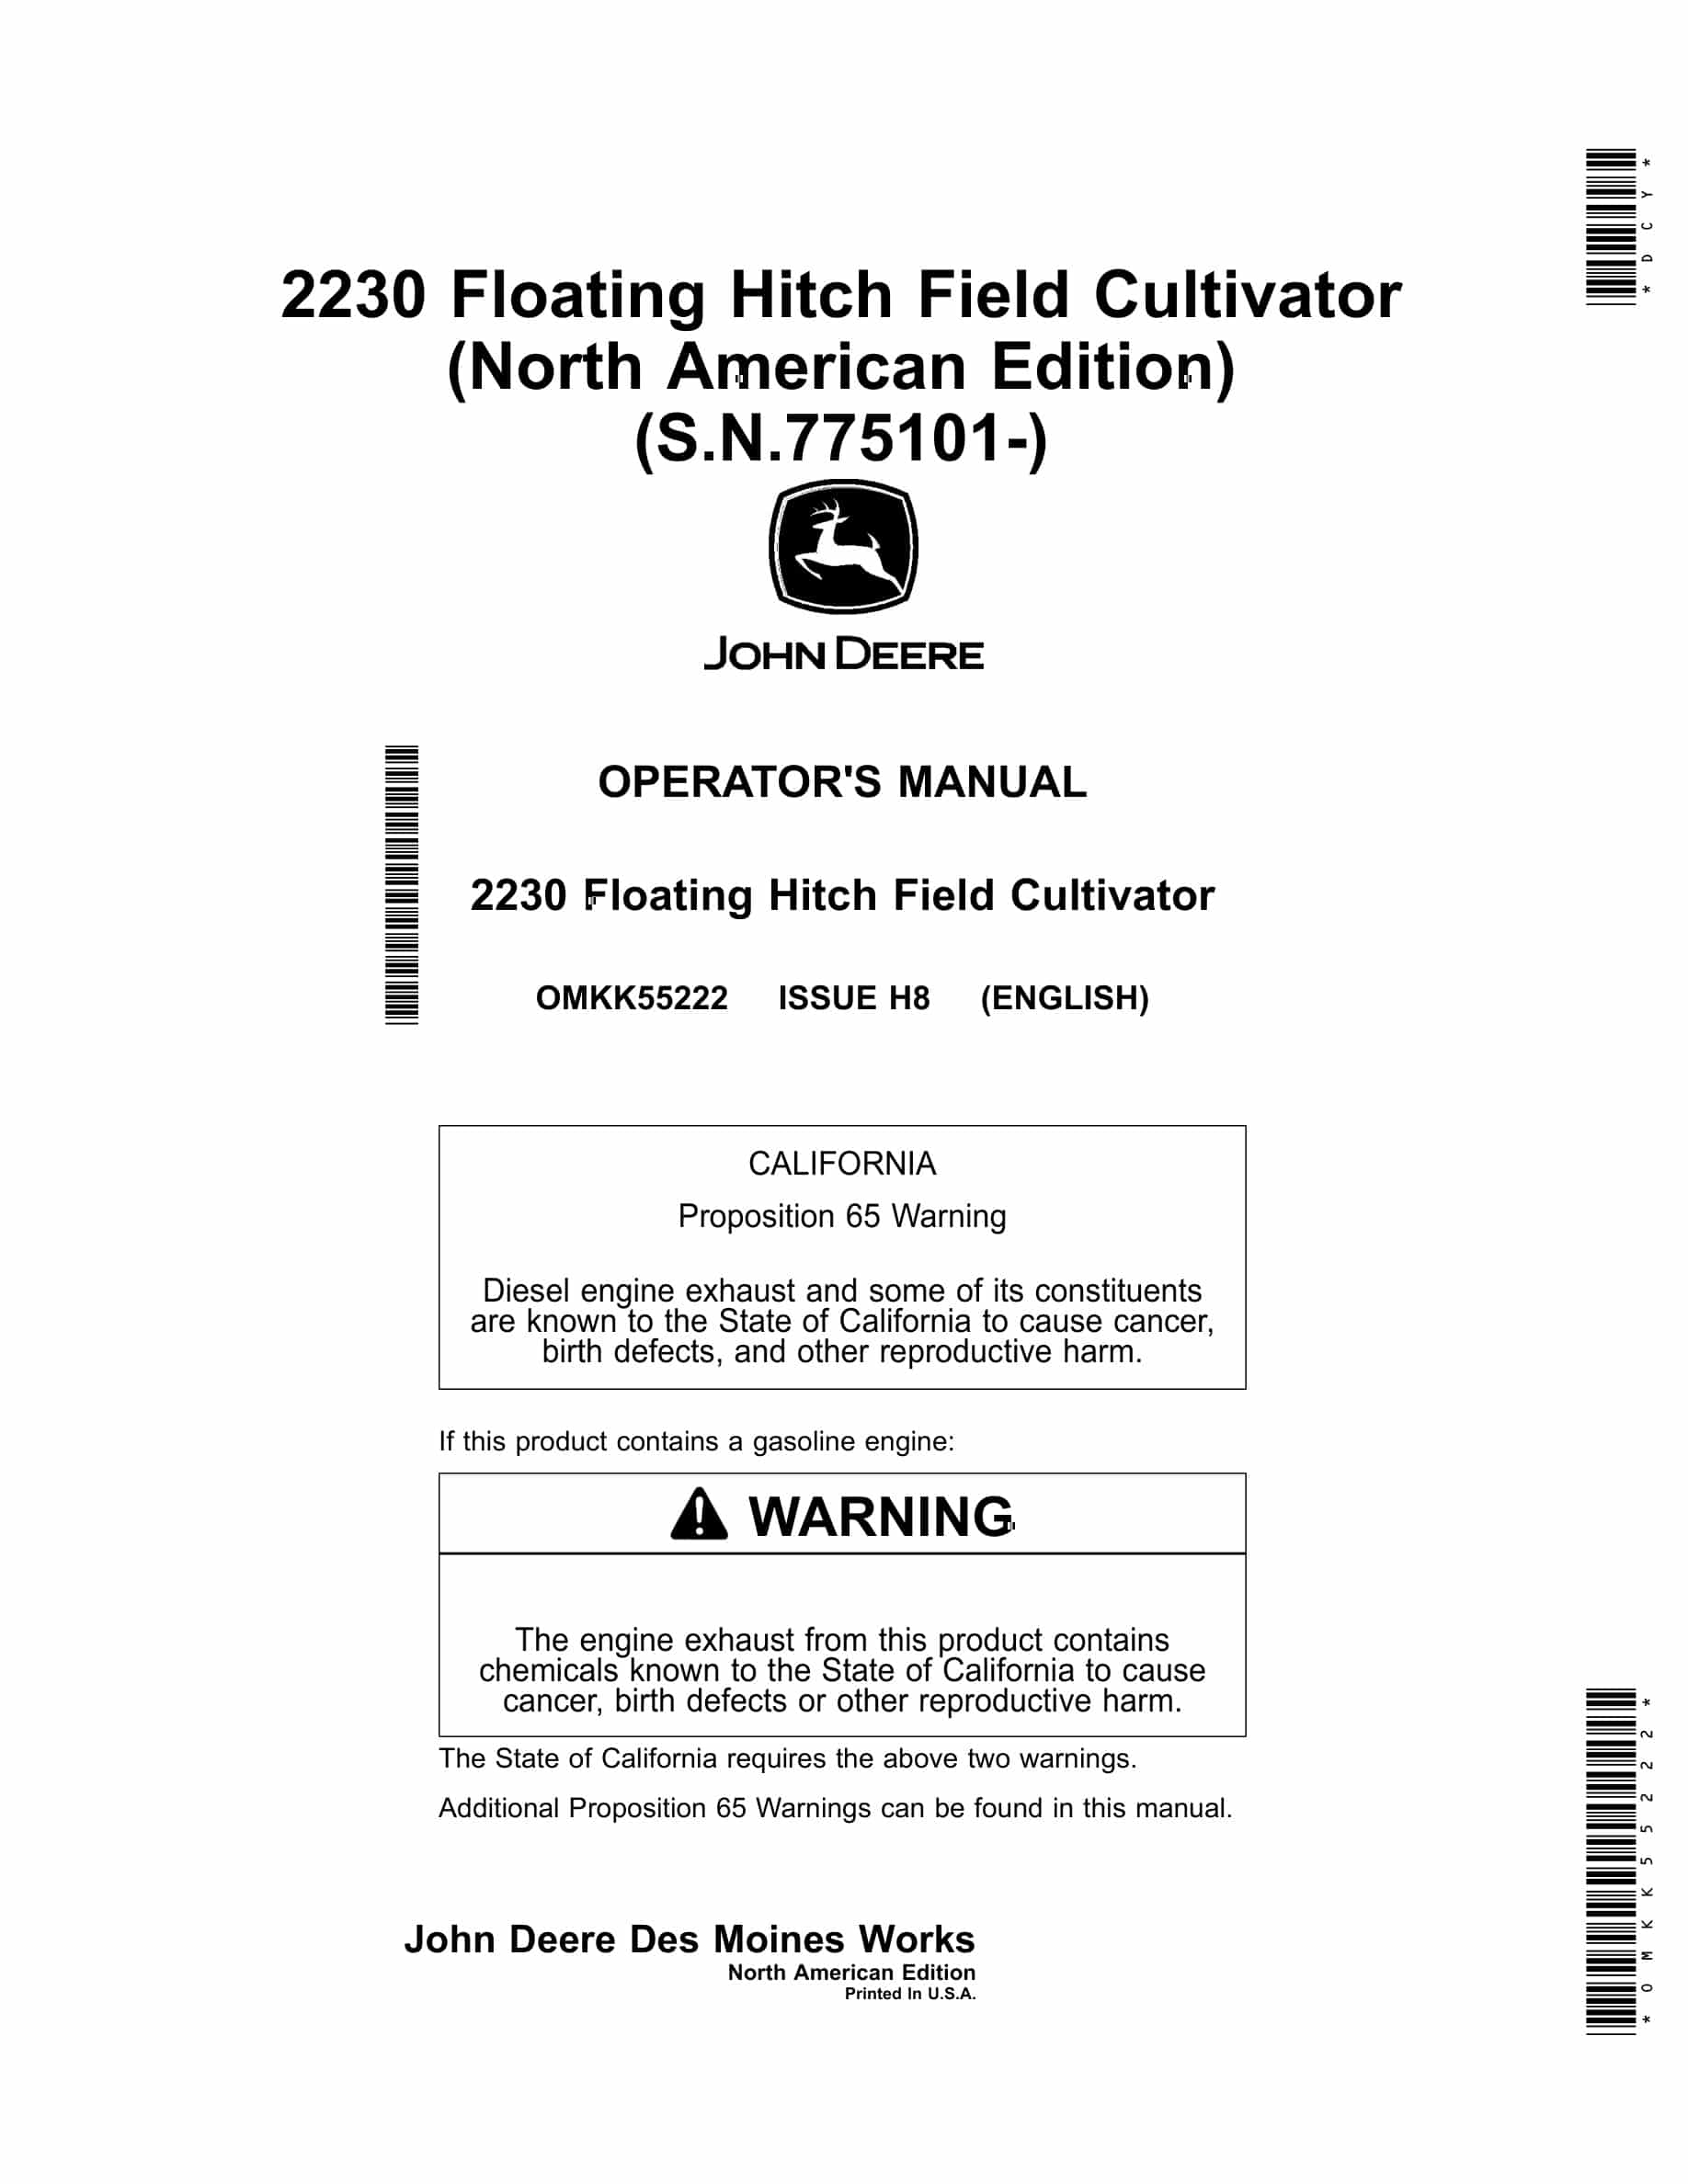 John Deere 2230 Floating Hitch Field Cultivator Operator Manual OMKK55222-1